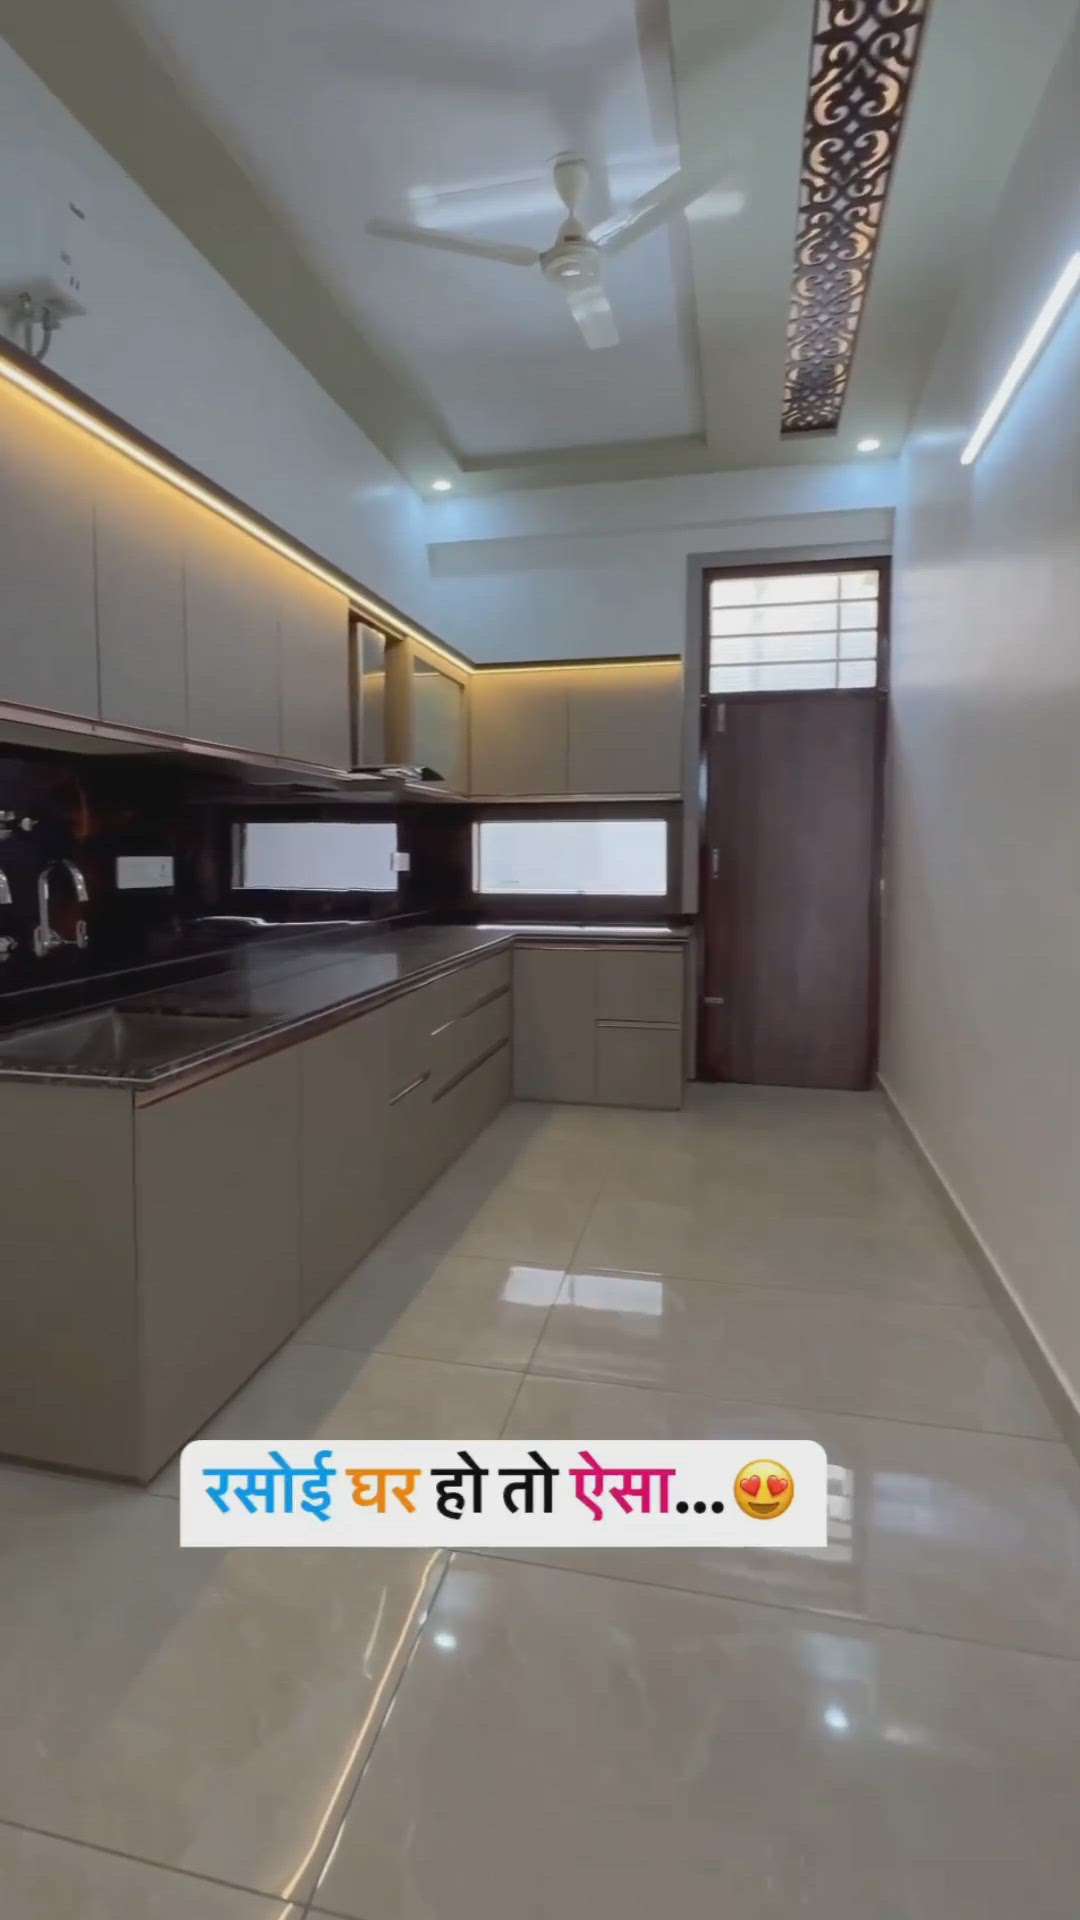 #KitchenIdeas  #kichan   #_modalur_kicthen_work_  #fanichar  #jaitpuriyaa_furniture_interiors